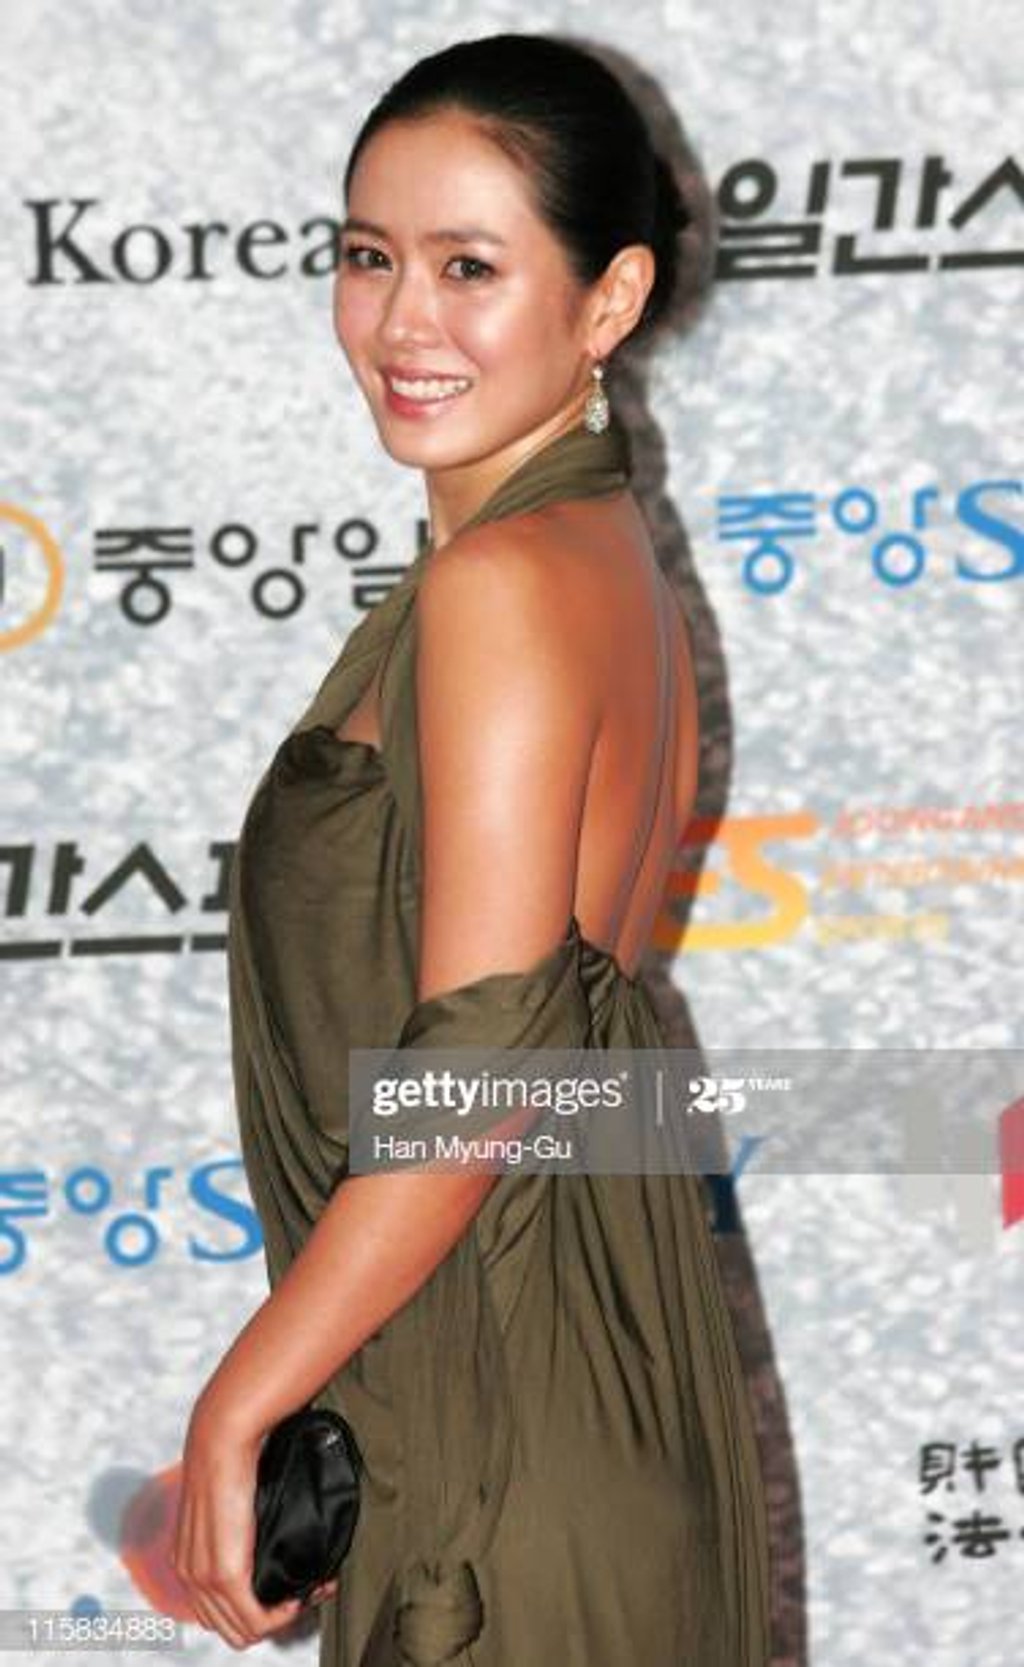 Năm 2007, Son Ye Jin đã có lựa chọn trang phục rất phóng khoáng, táo bạo. Tuy nhiên, thiết kế hơi lùng bùng của chiếc đầm lại không giúp ích được gì nhiều trong việc tôn lên những đường cong của nữ diễn viên.